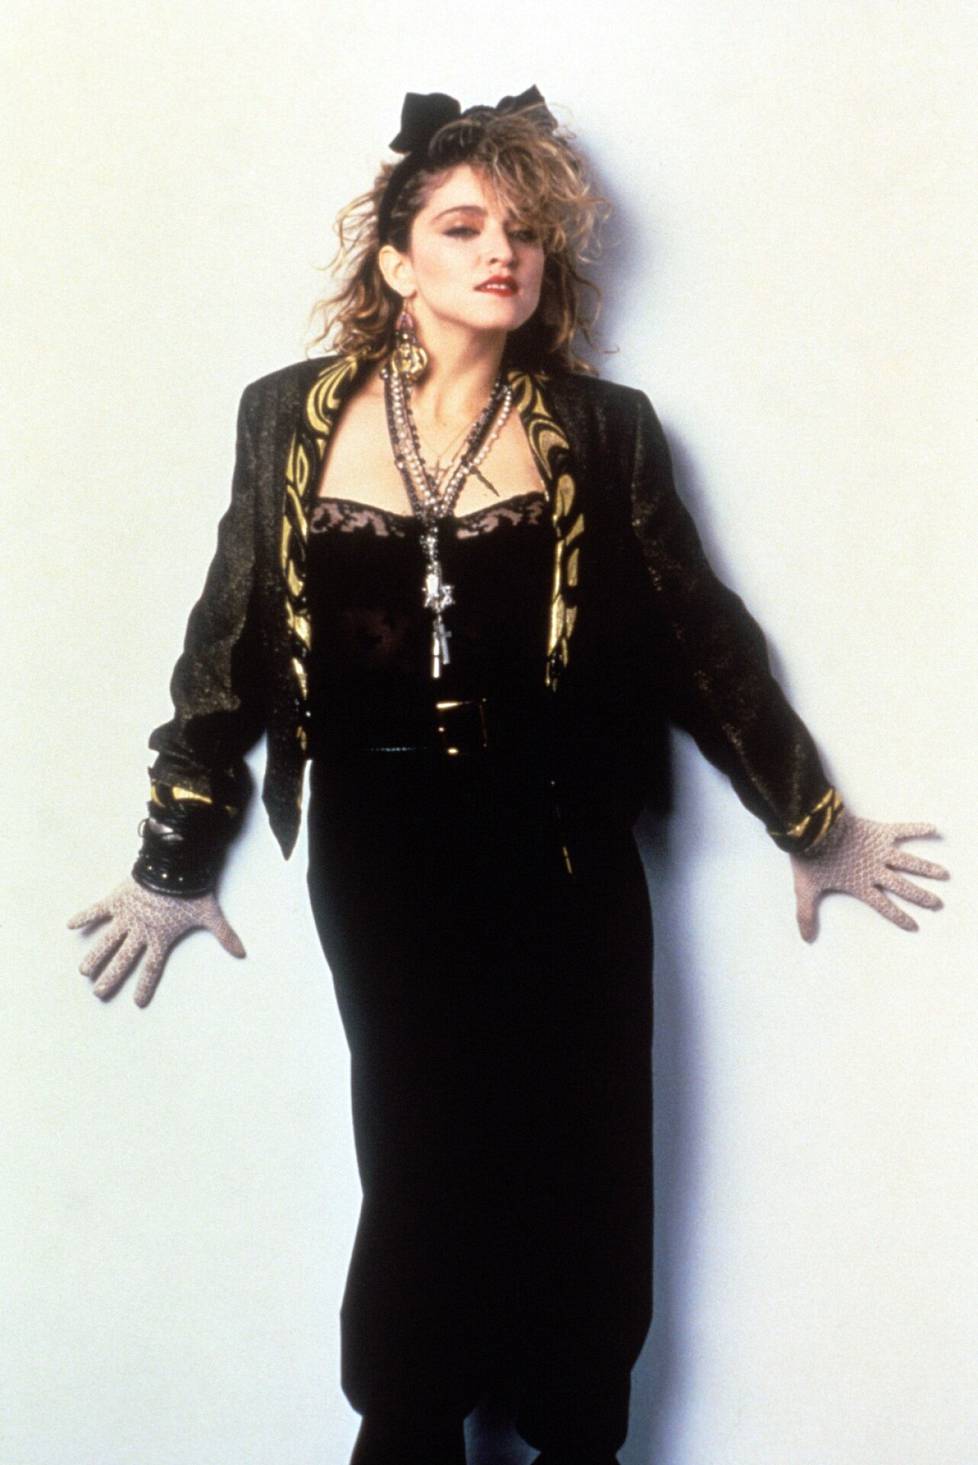 Ensimmäisten singlejen julkaisun jälkeen Madonnan ura lähti nopeasti nousukiitoon.